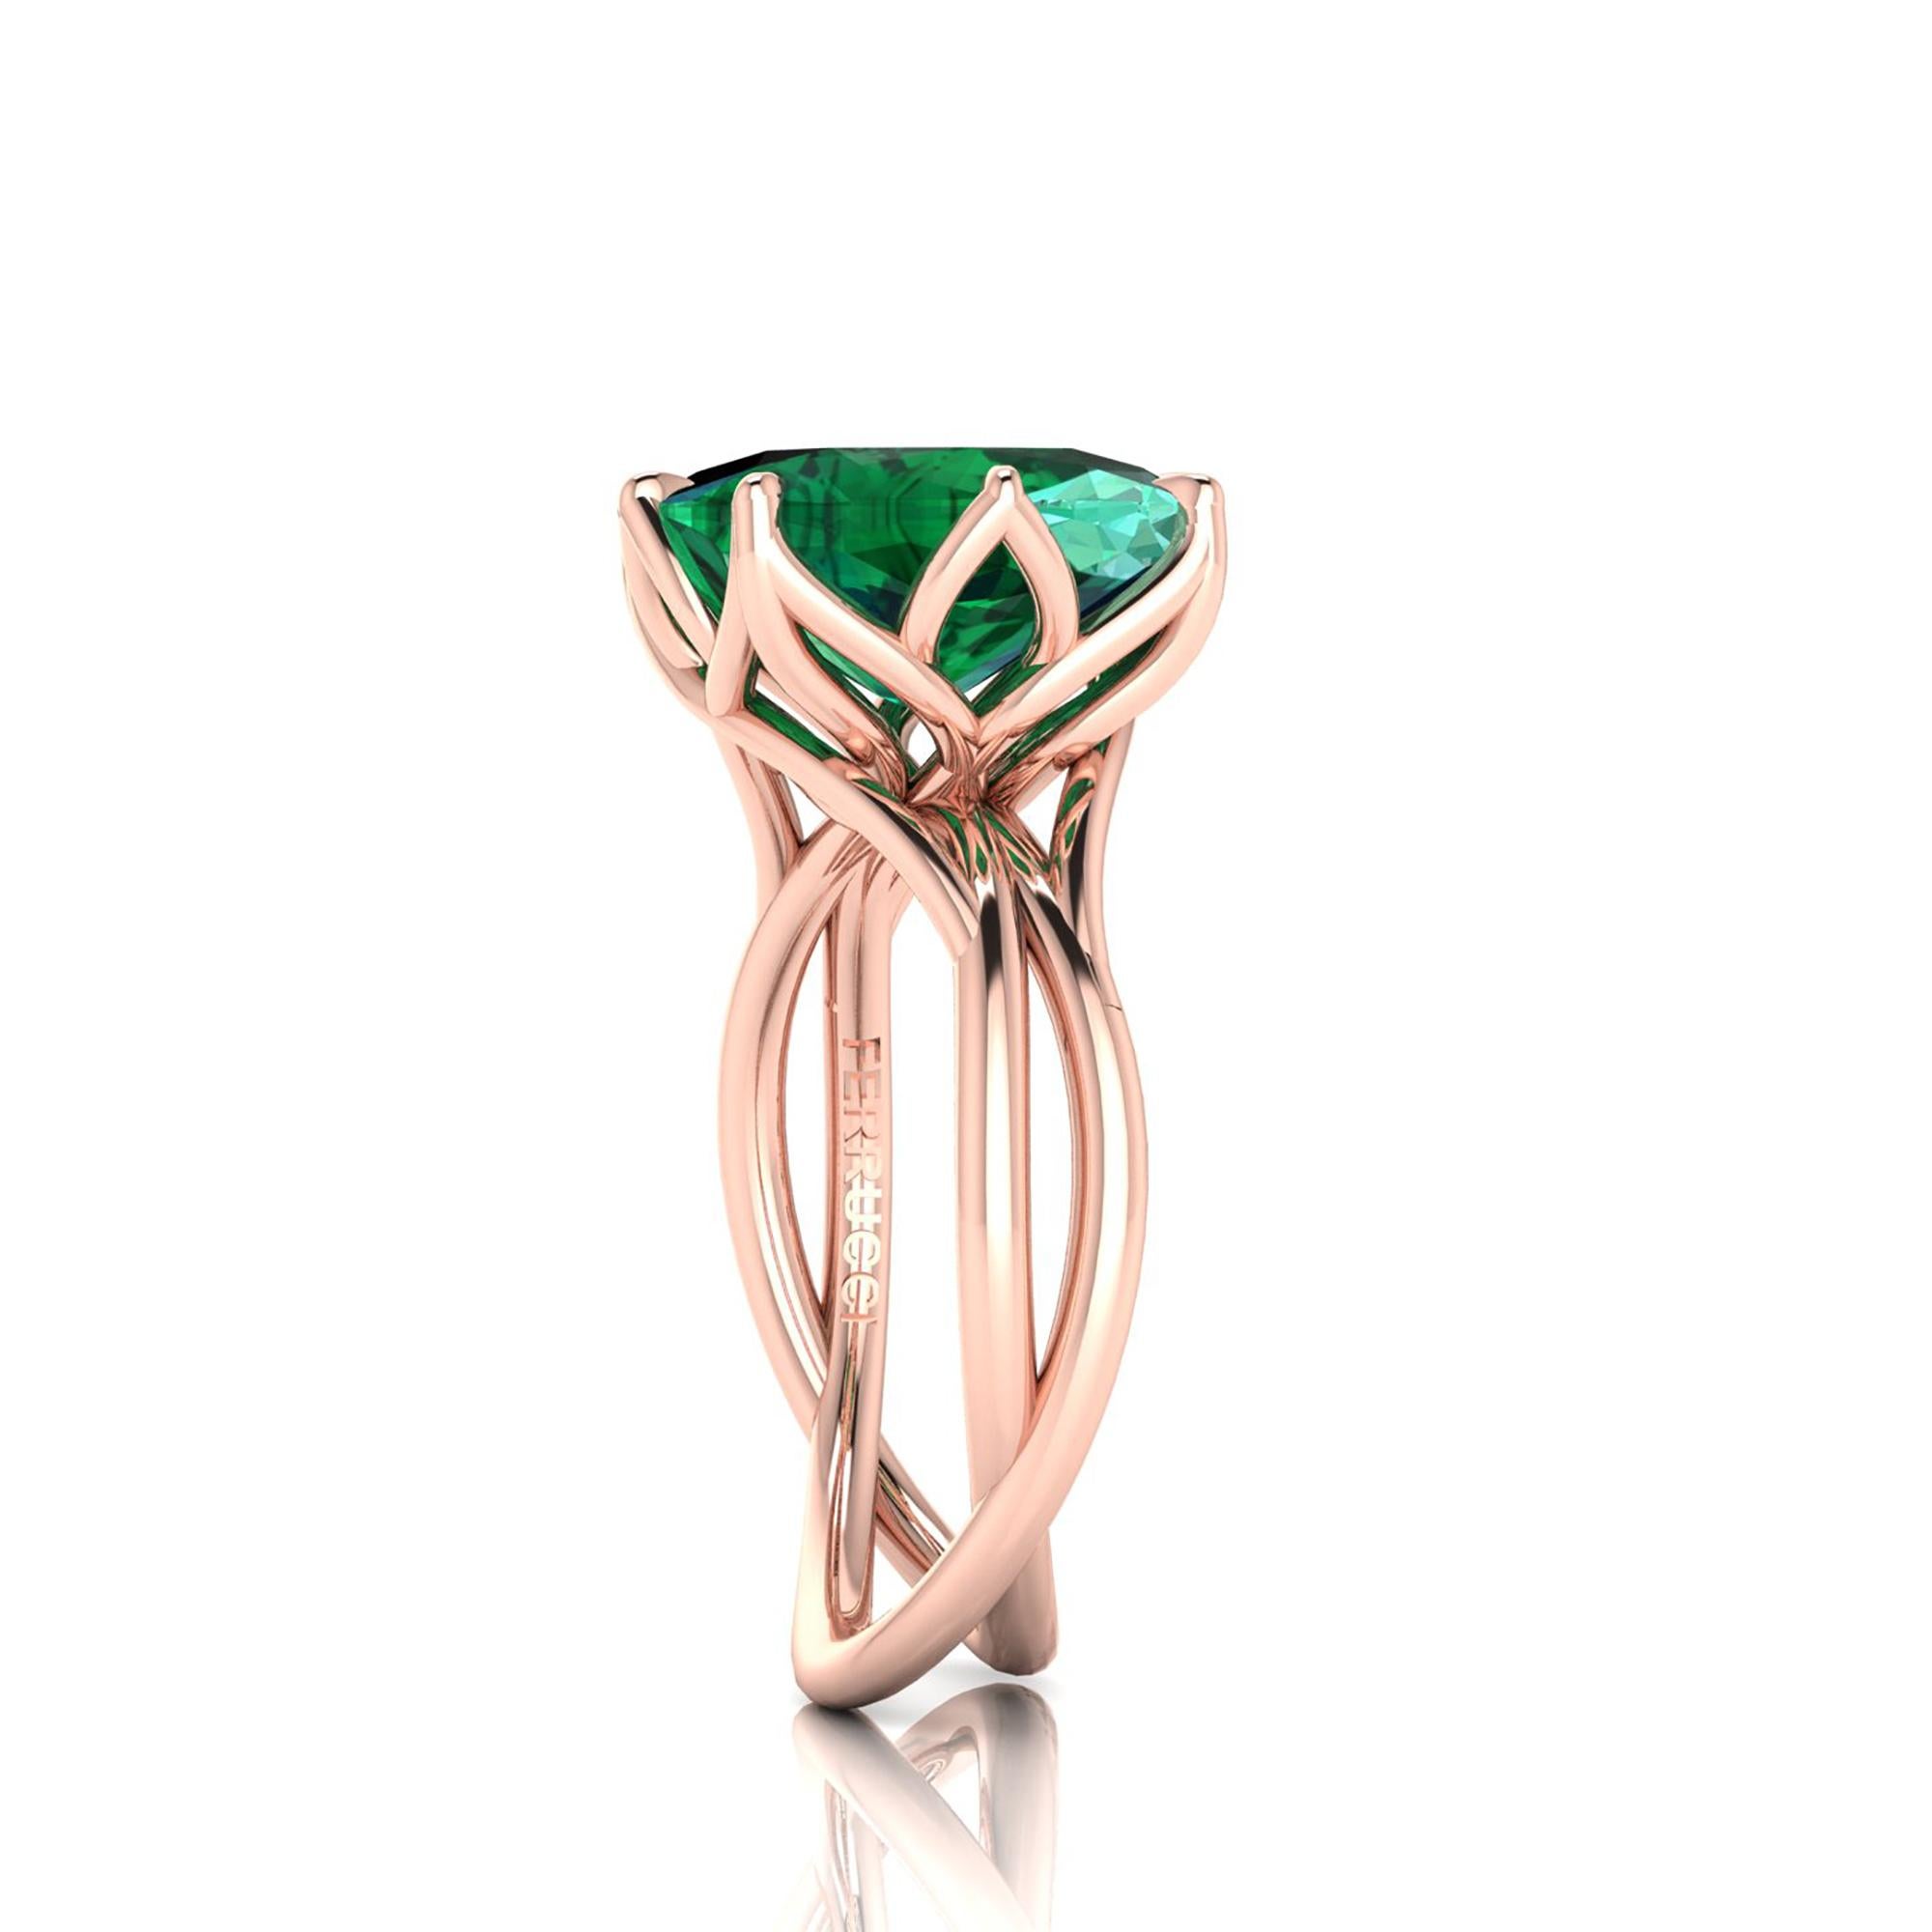 Women's GIA Certified 5.42 Carat Emerald Cushion Cut in 18 Karat Rose Gold Cocktail Ring